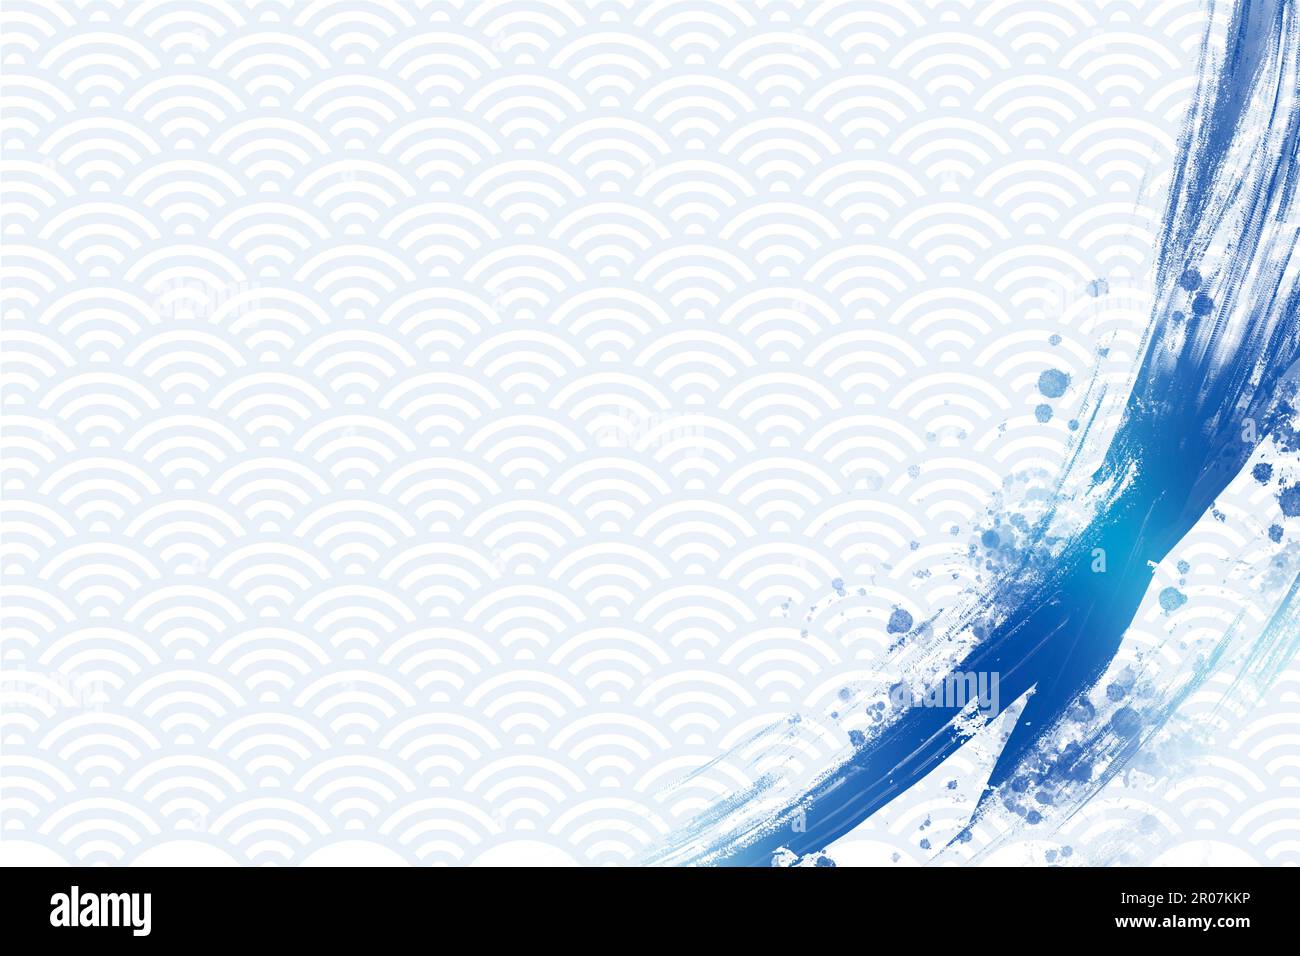 Illustration d'arrière-plan de style japonais bleu clair. Coups de pinceau bleus et éclaboussures. Modèle traditionnel (Seigaiha). Concept mer et été. Actualisation Banque D'Images